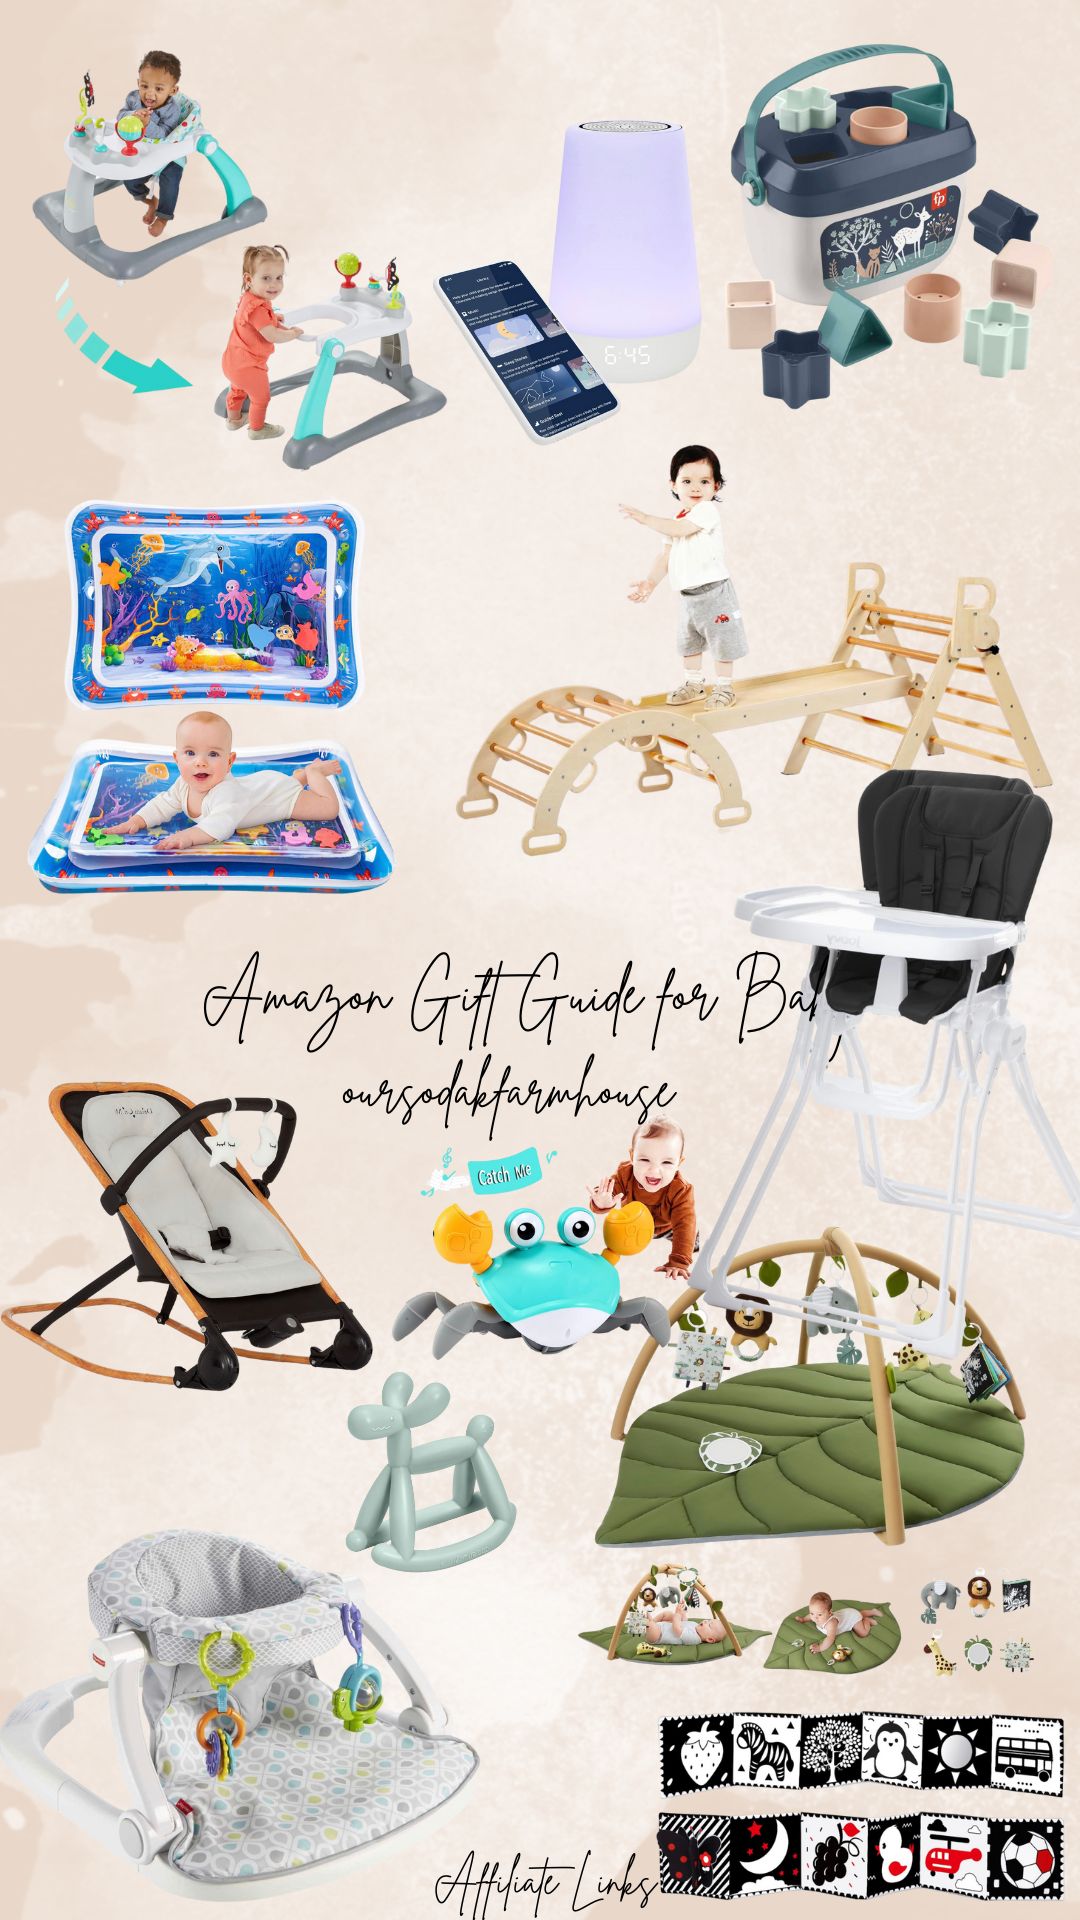 Baby gift guide | Amazon (US)